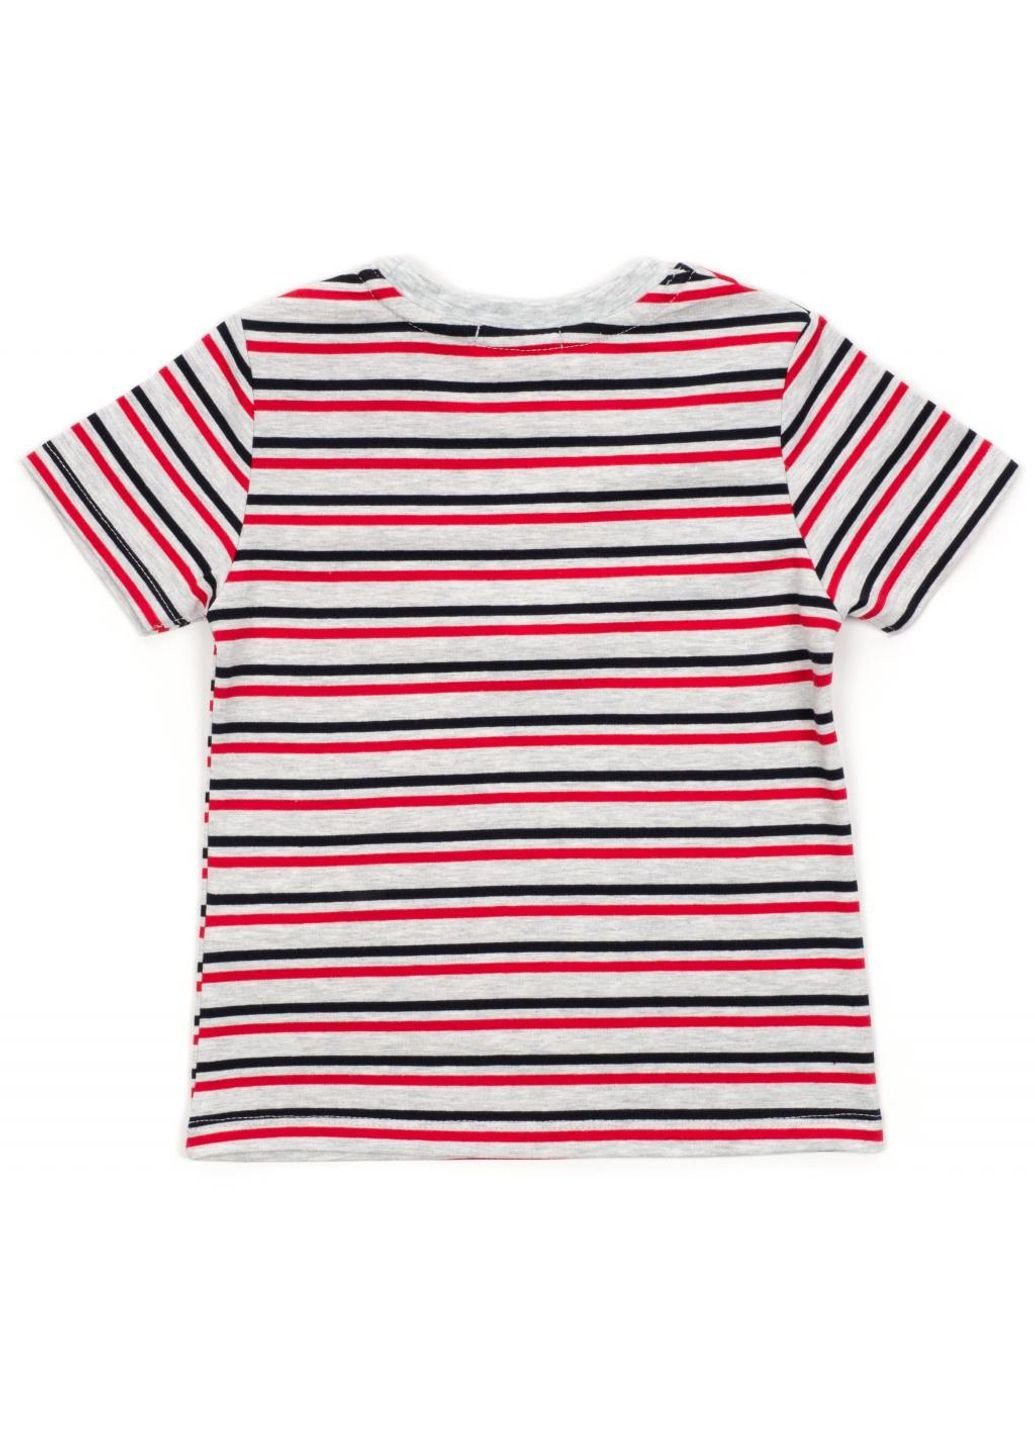 Червоний літній набір дитячого одягу у смужку (15997-98b-red) Breeze